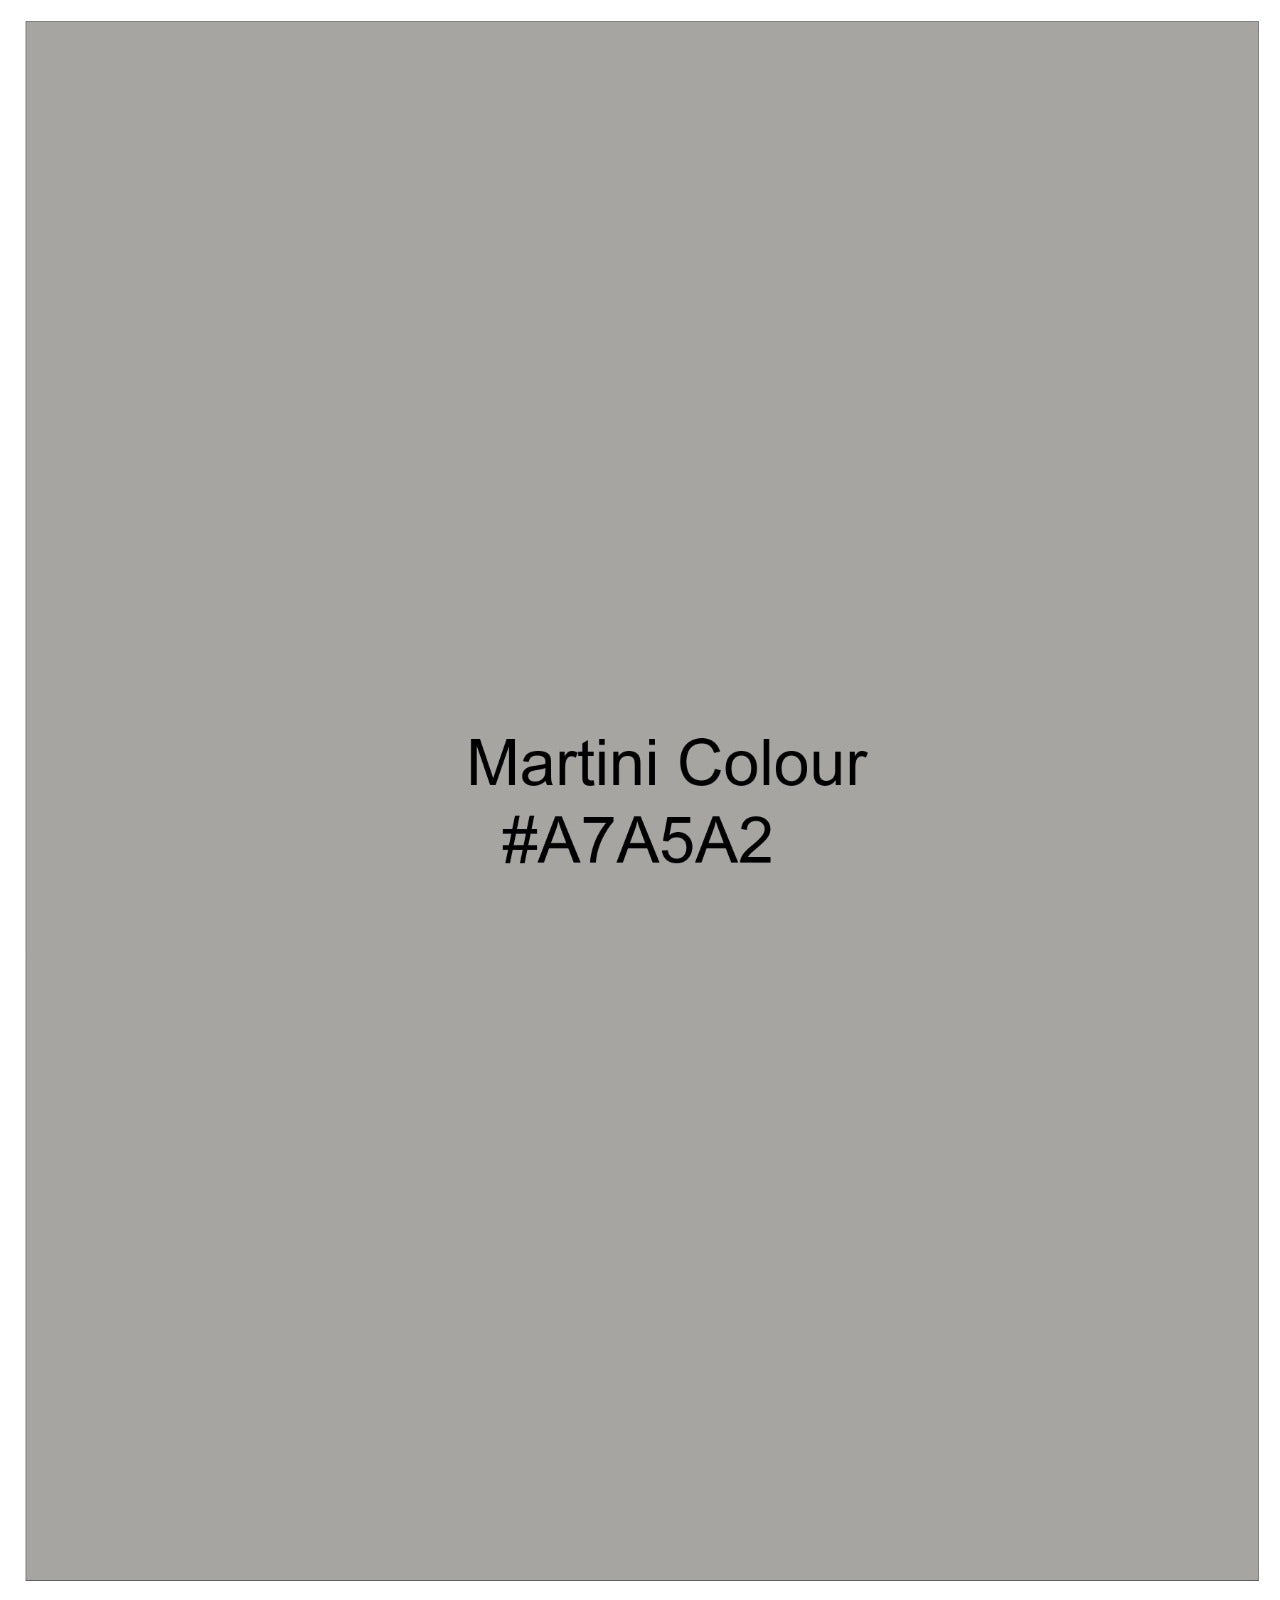 Martini Gray Stretchable Premium Cotton Waistcoat V2667-36, V2667-38, V2667-40, V2667-42, V2667-44, V2667-46, V2667-48, V2667-50, V2667-52, V2667-54, V2667-56, V2667-58, V2667-60